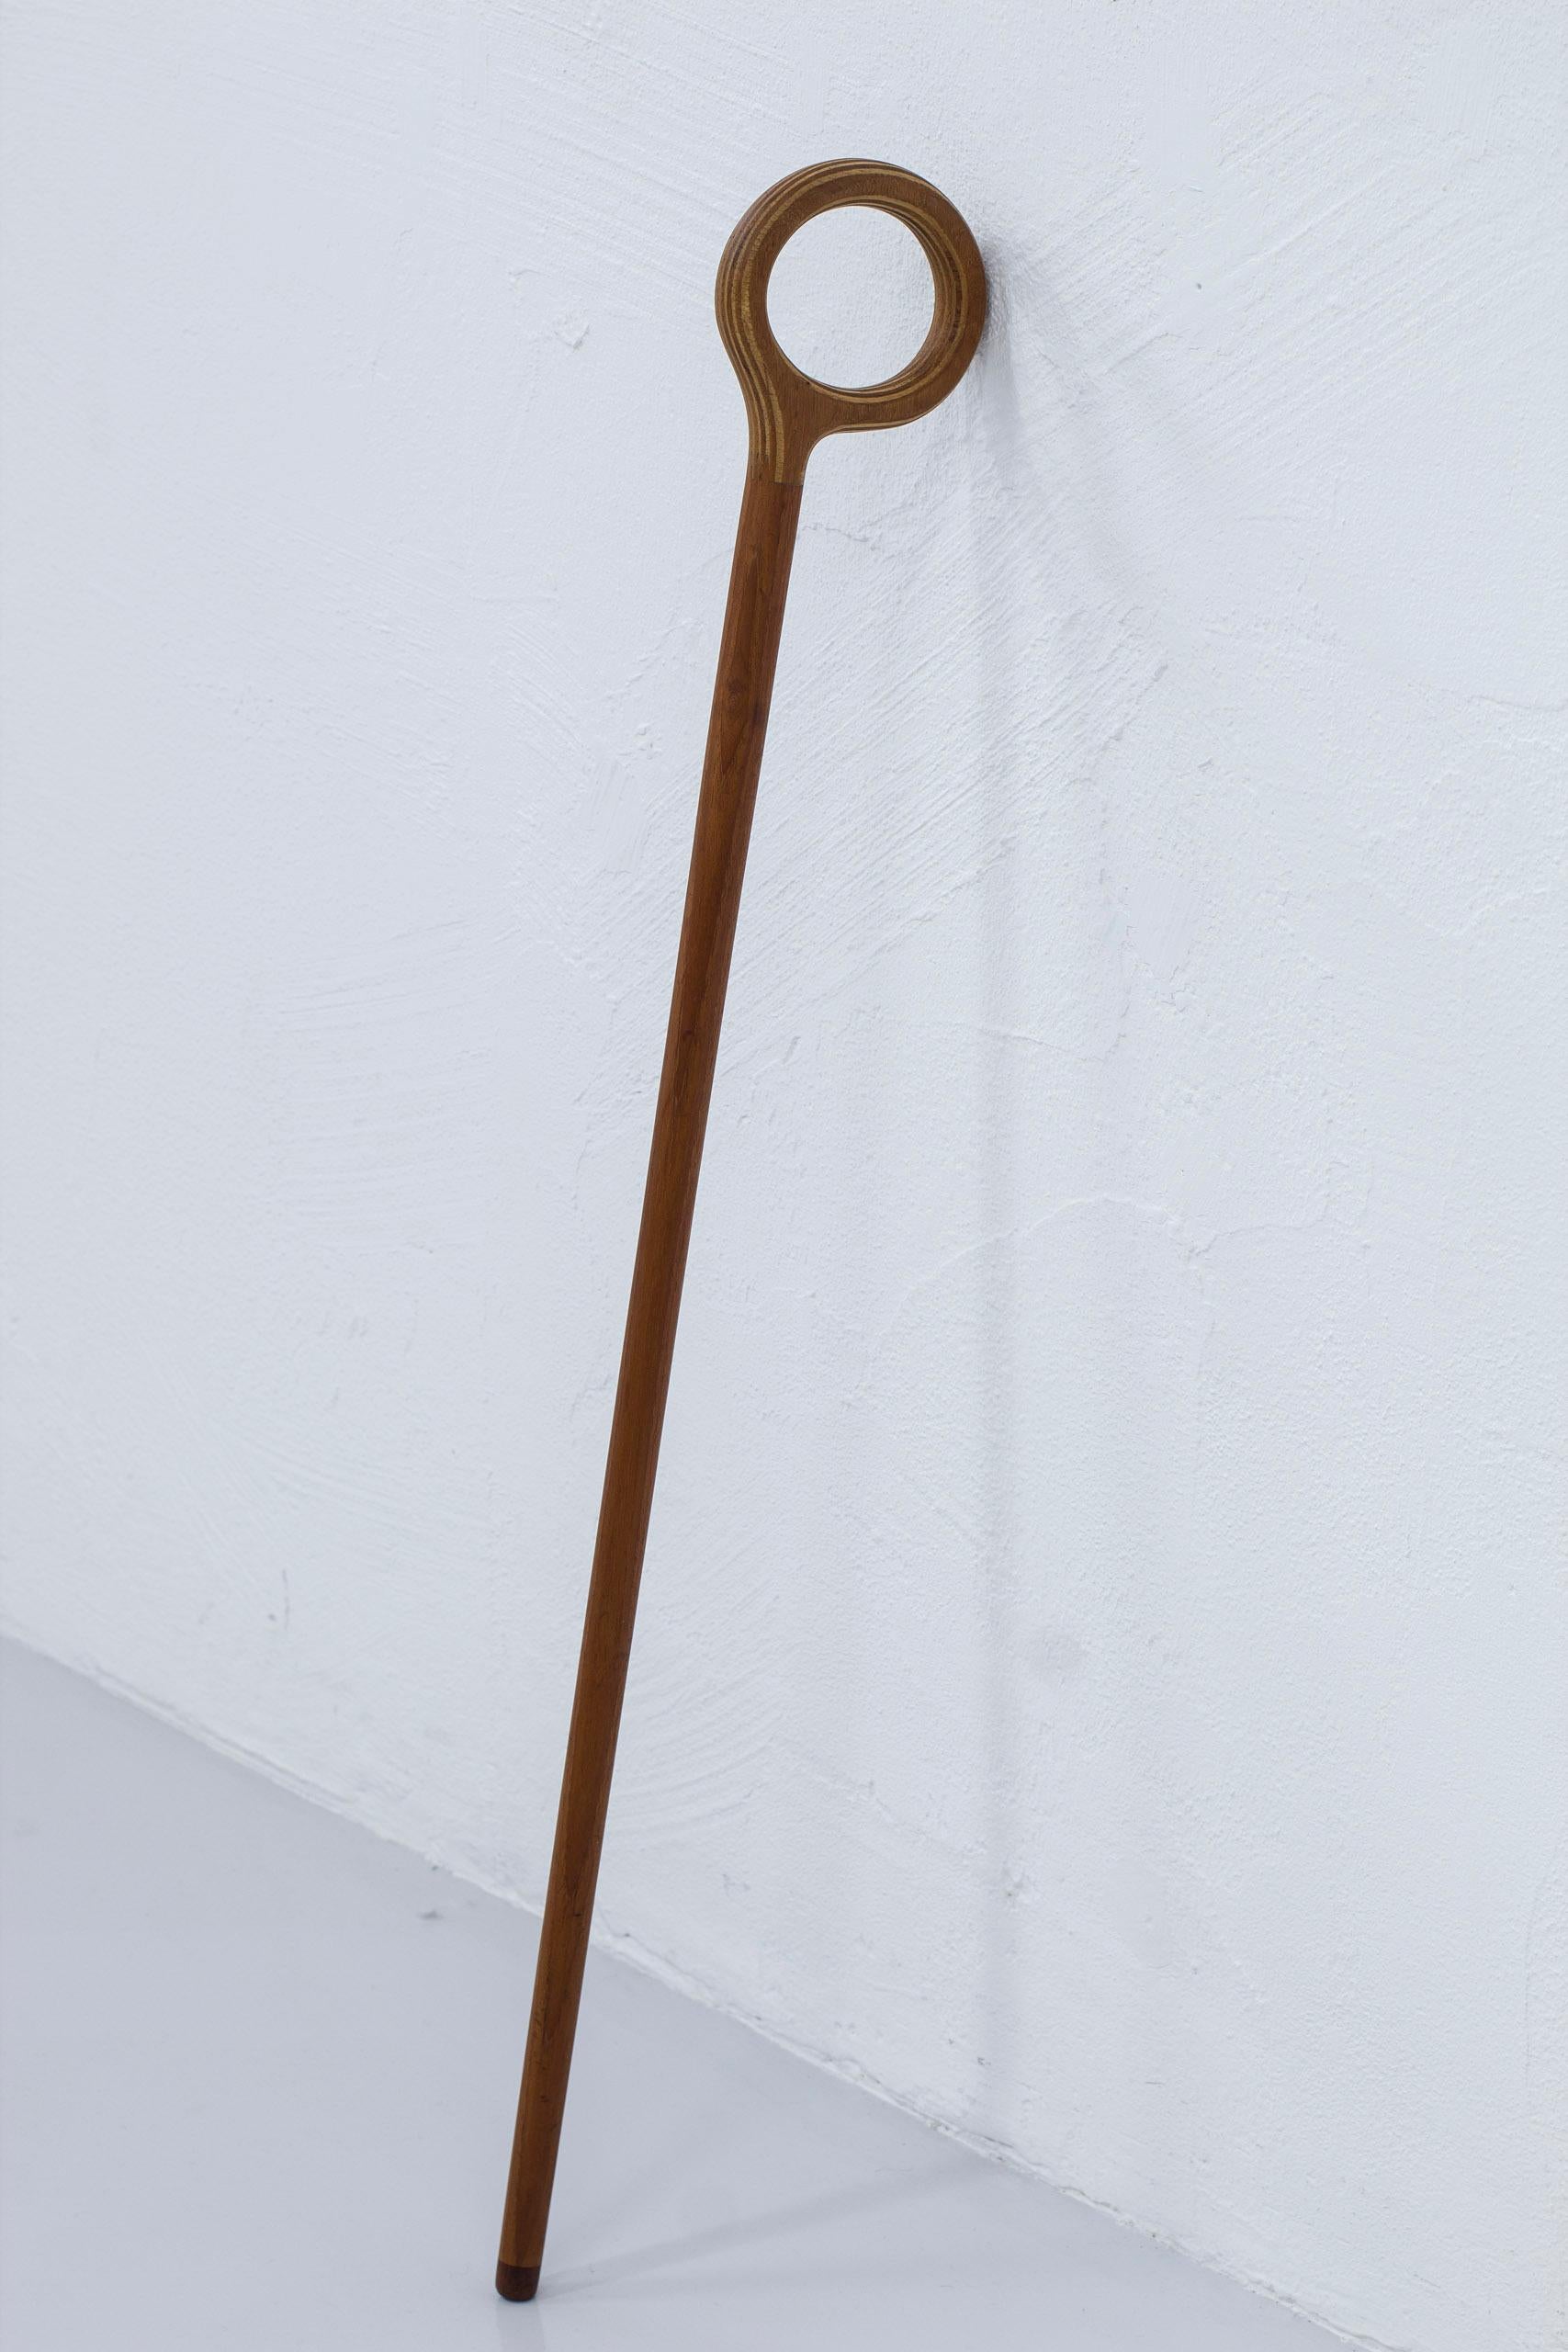 Bâton de marche conçu par Nanna & Jørgen Ditzel. Produit par Kold's Savvaerk au Danemark dans les années 1950. Ce modèle est fabriqué en teck massif pour la tige, avec une pointe en noyer et un manche en érable stratifié et teck. Bon état vintage